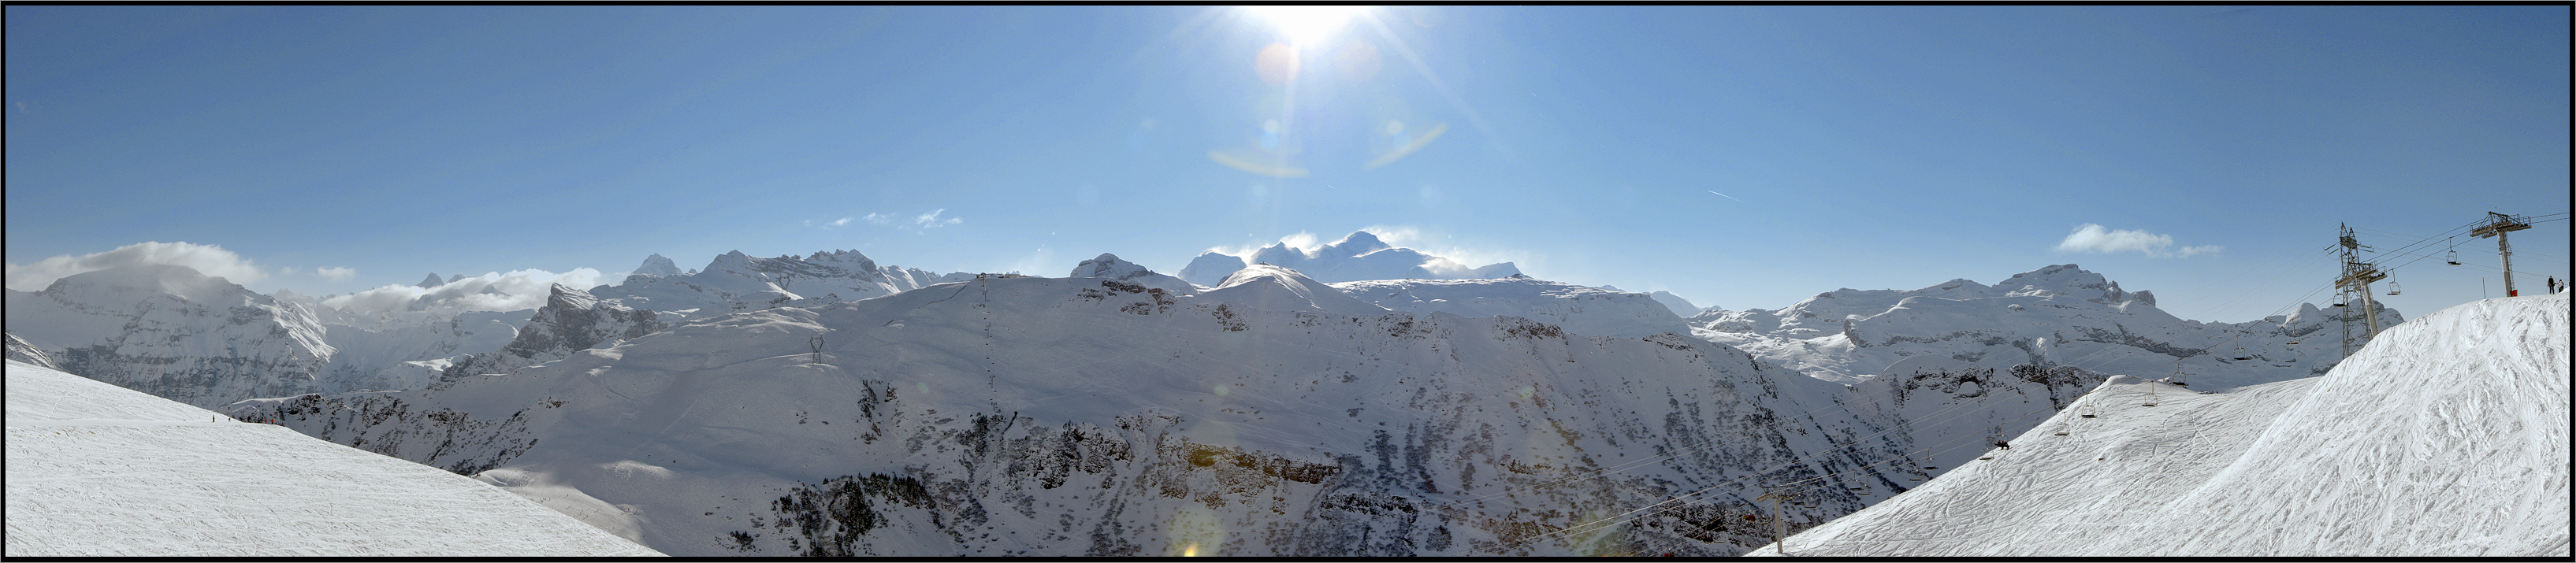 Le Mont-Blanc sous le soleil, Haute-Savoie, France, Janvier 2007